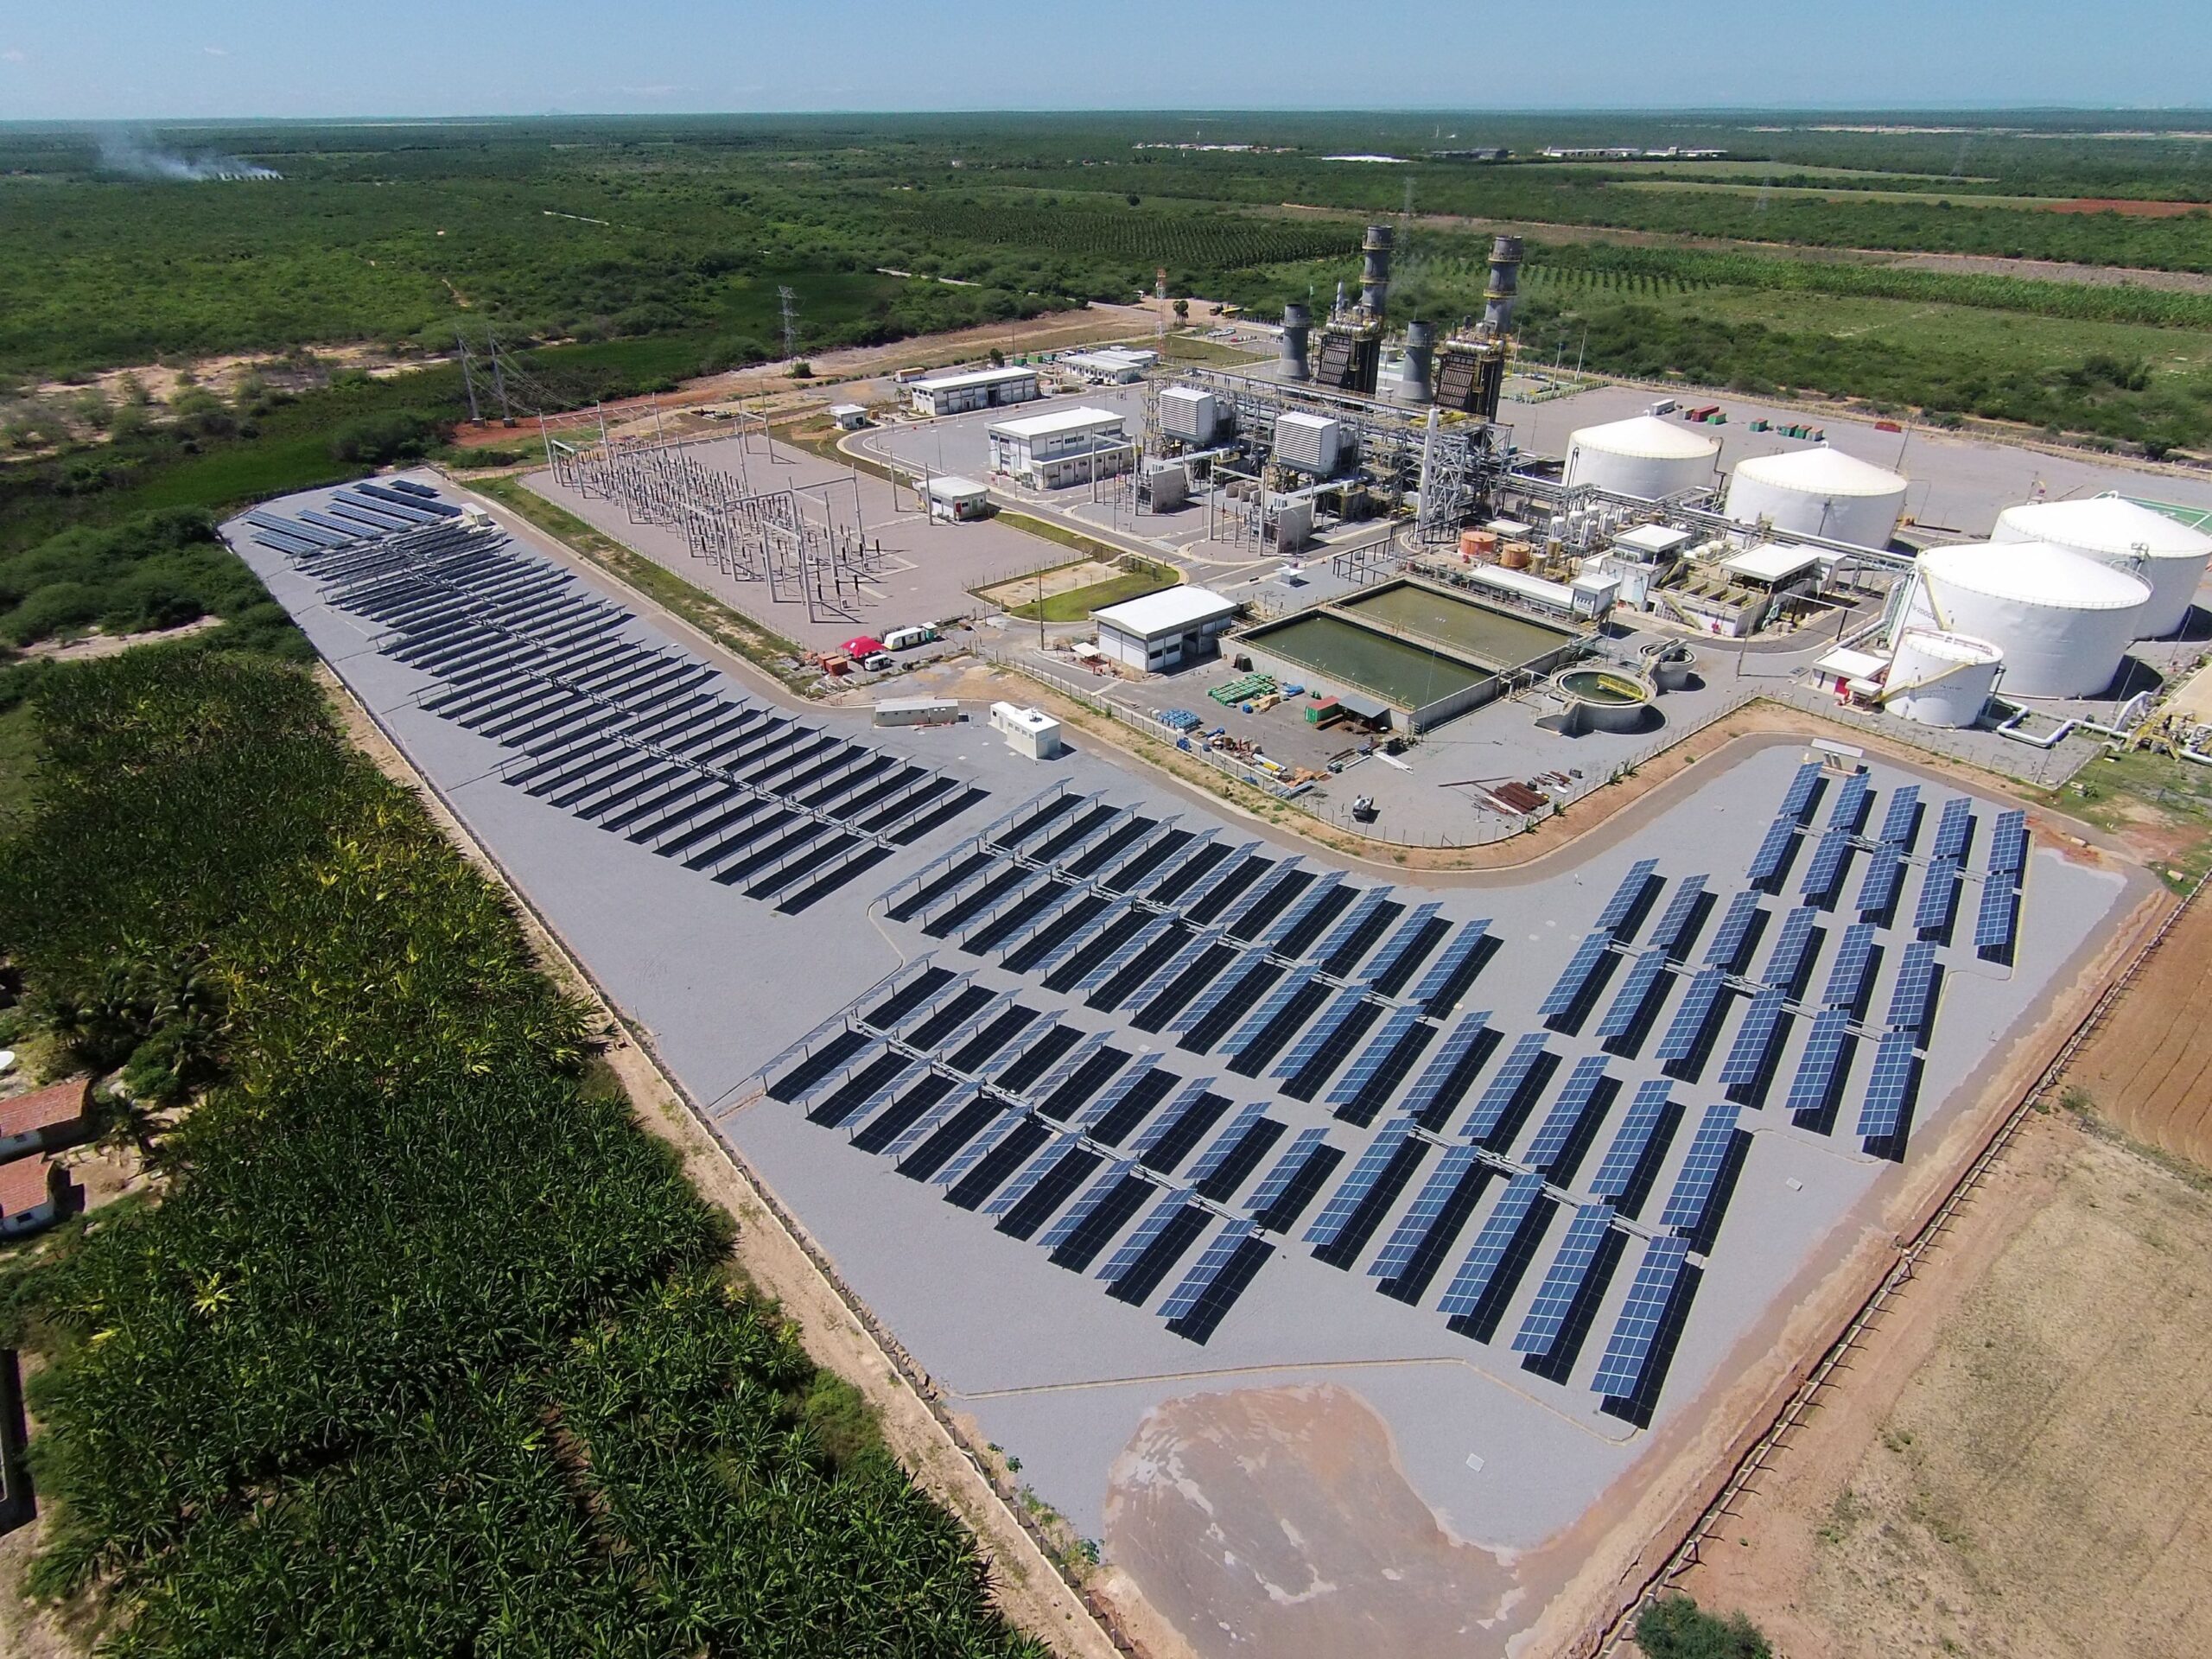 Petrobras da inicio a uma nova era com as obra de usinas solares em três refinarias; projeto tem capacidade combinada de 48 megawatts